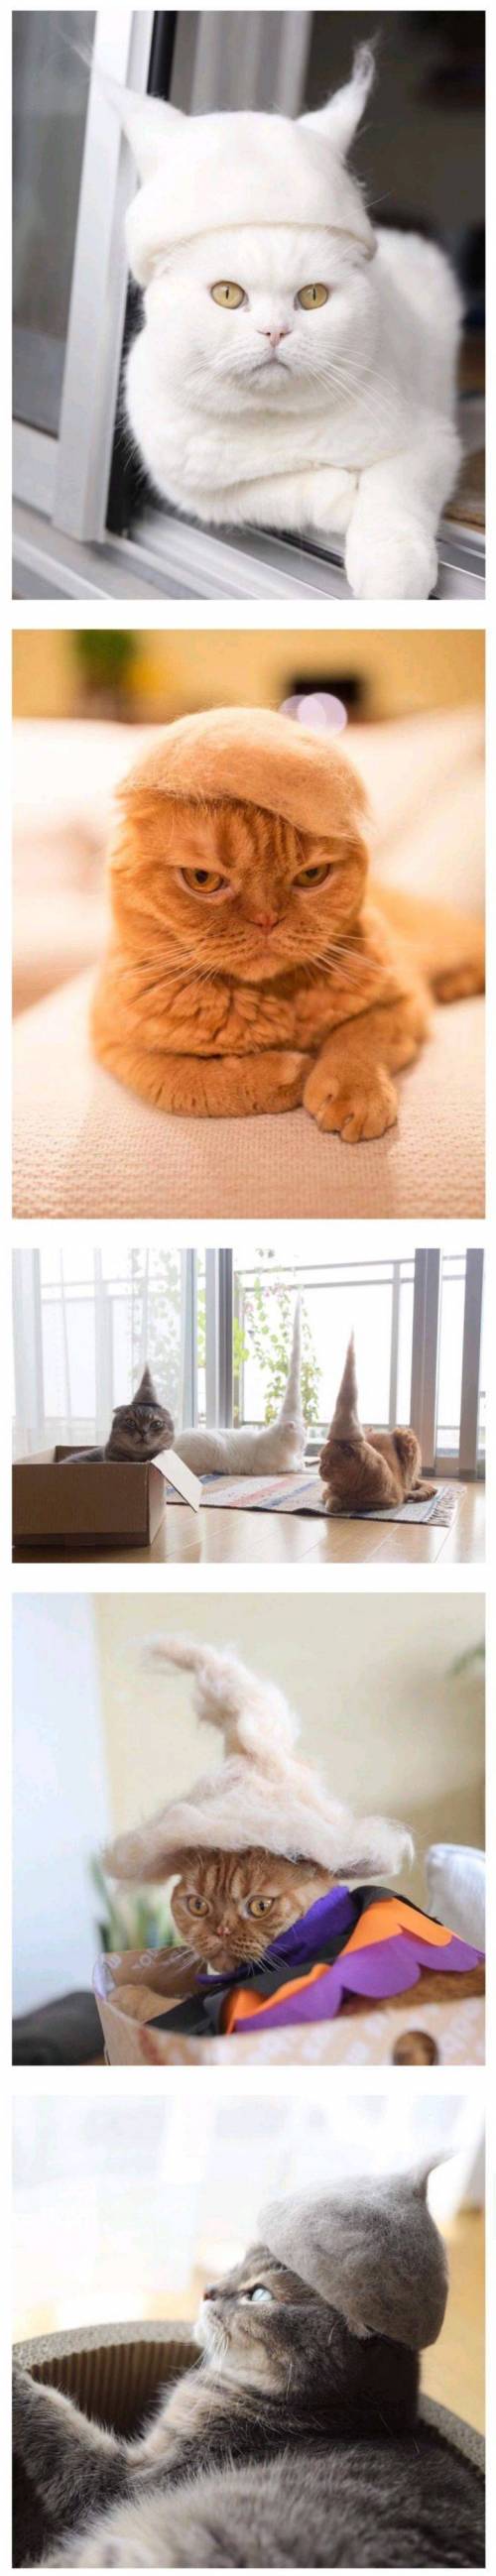 [스압] 고양이 털로 만든 귀여운 아이템.jpg